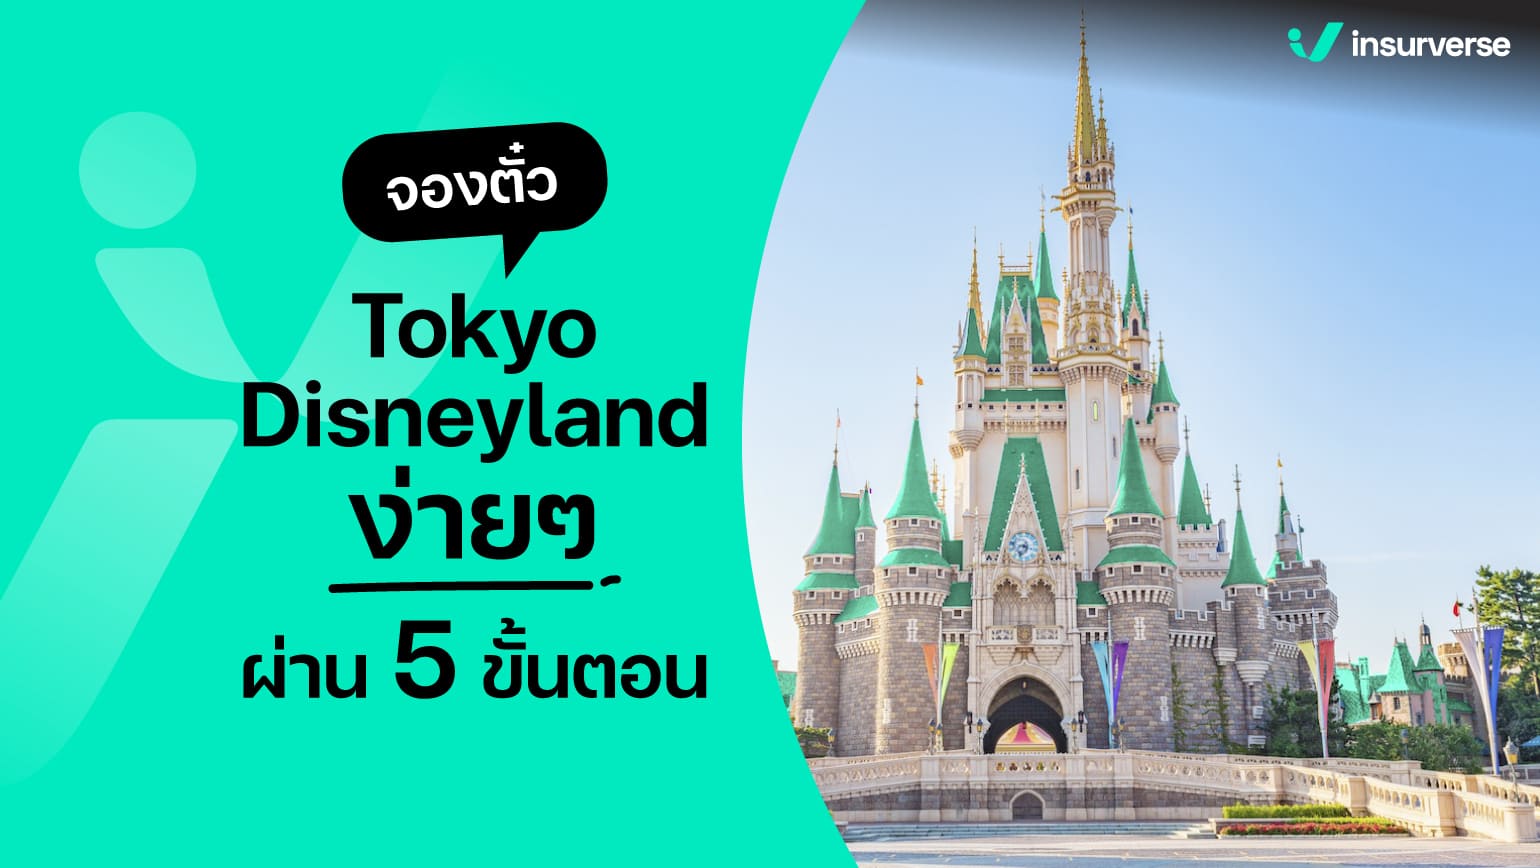 จองตั๋ว Tokyo Disneyland ง่ายๆ ผ่าน 5 ขั้นตอน